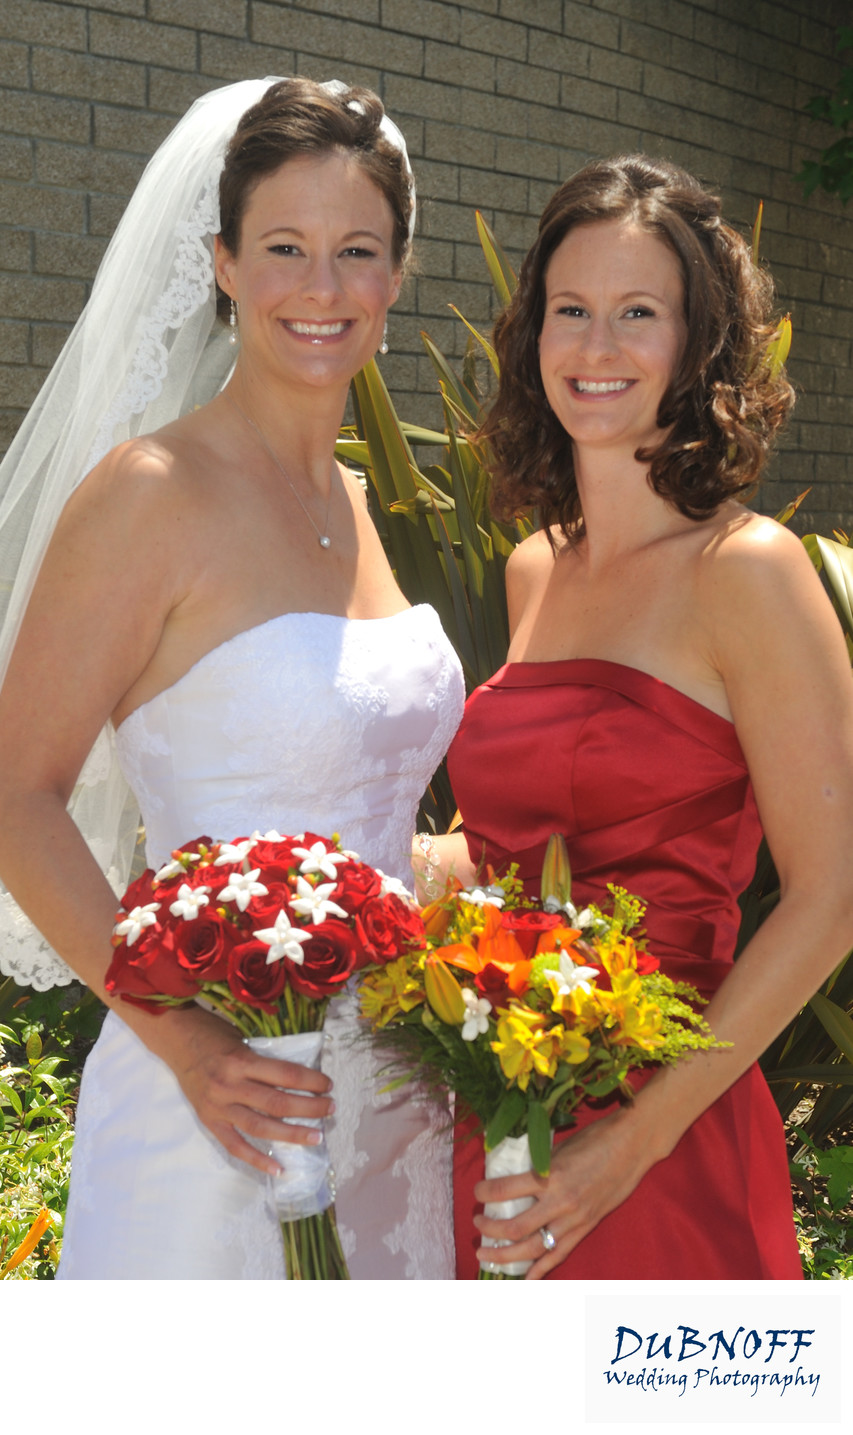 Twin Bride in the San Francisco Bay Area